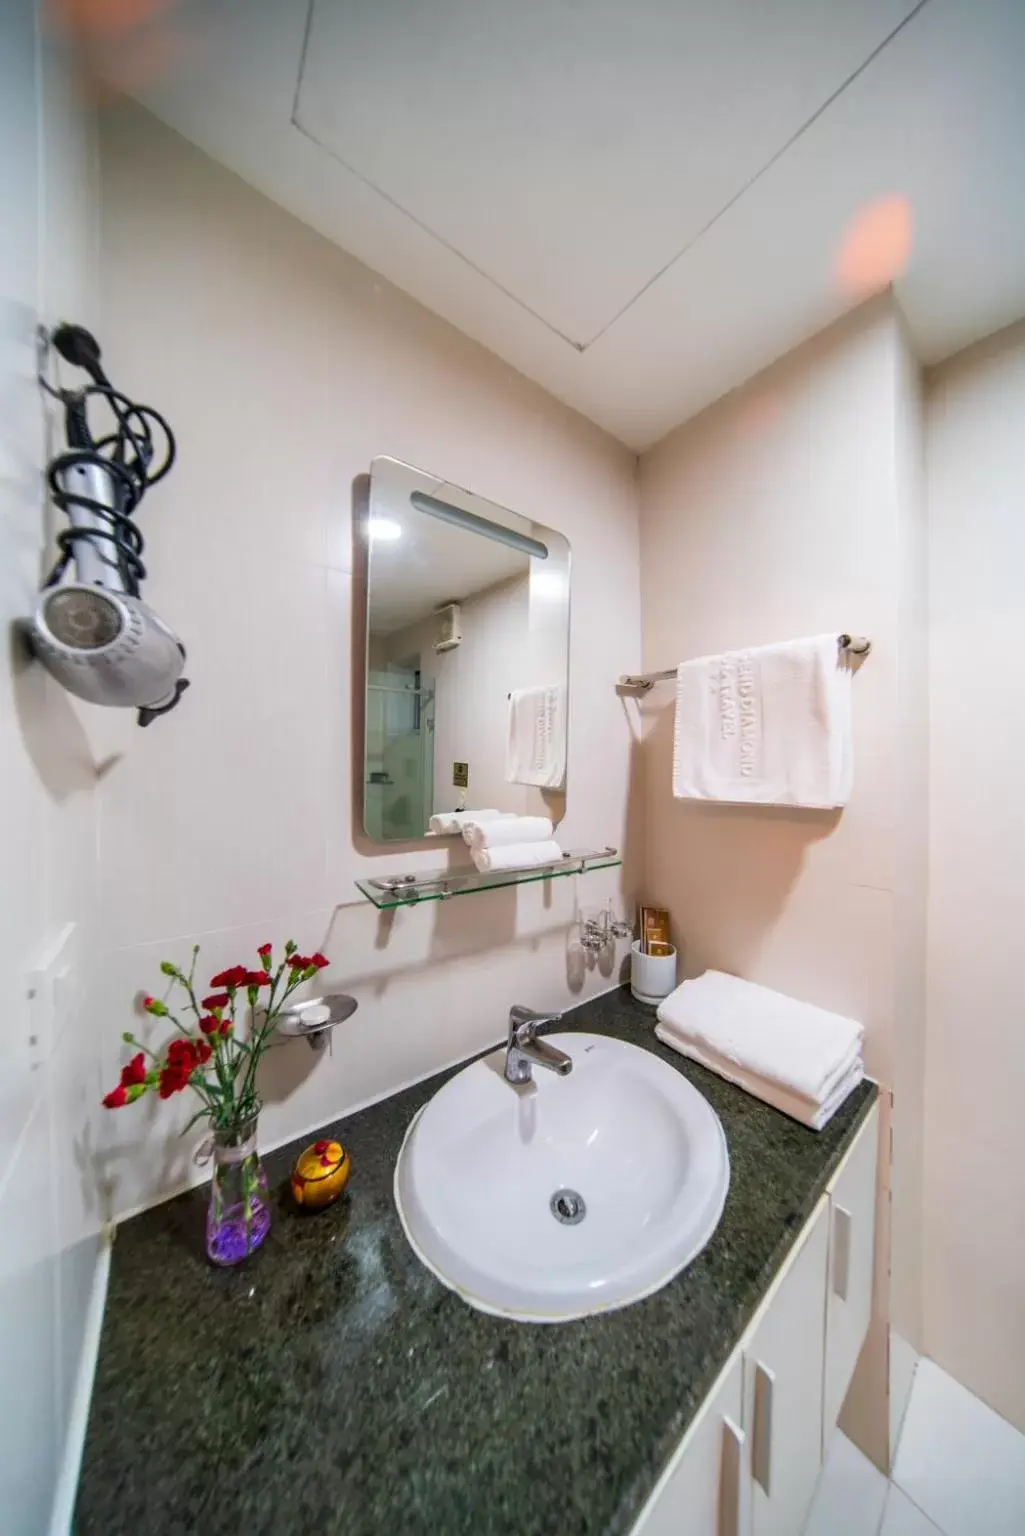 Bathroom in Golden Legend Diamond Hotel